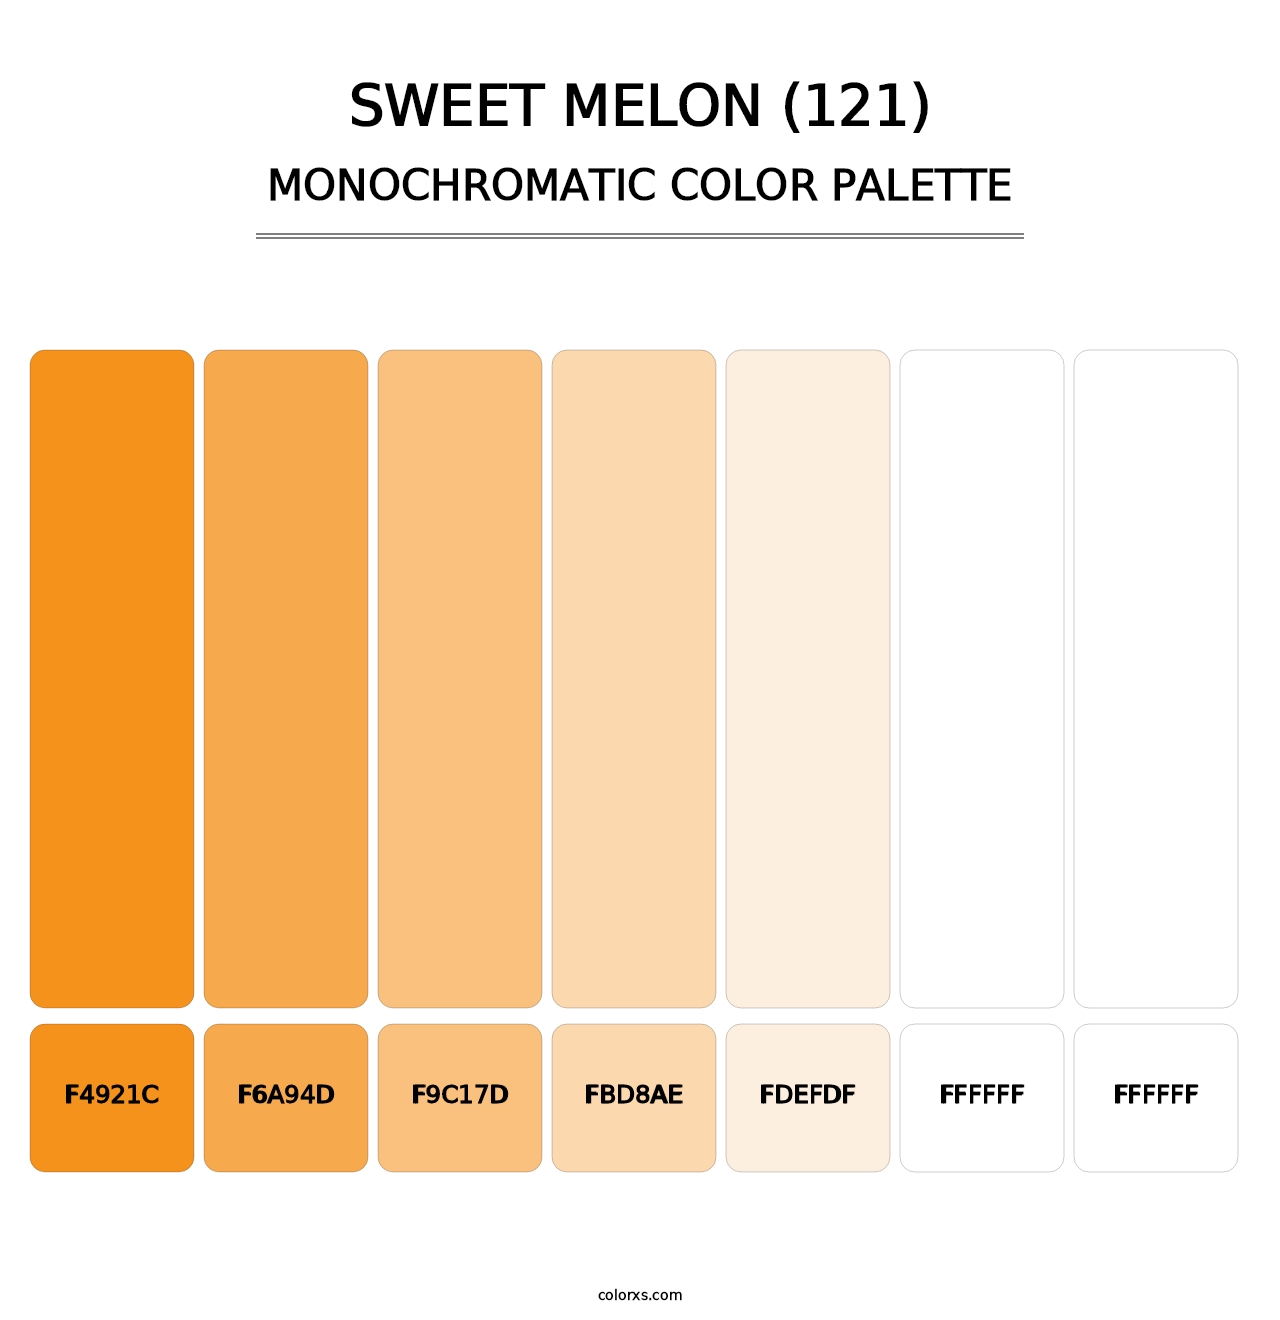 Sweet Melon (121) - Monochromatic Color Palette